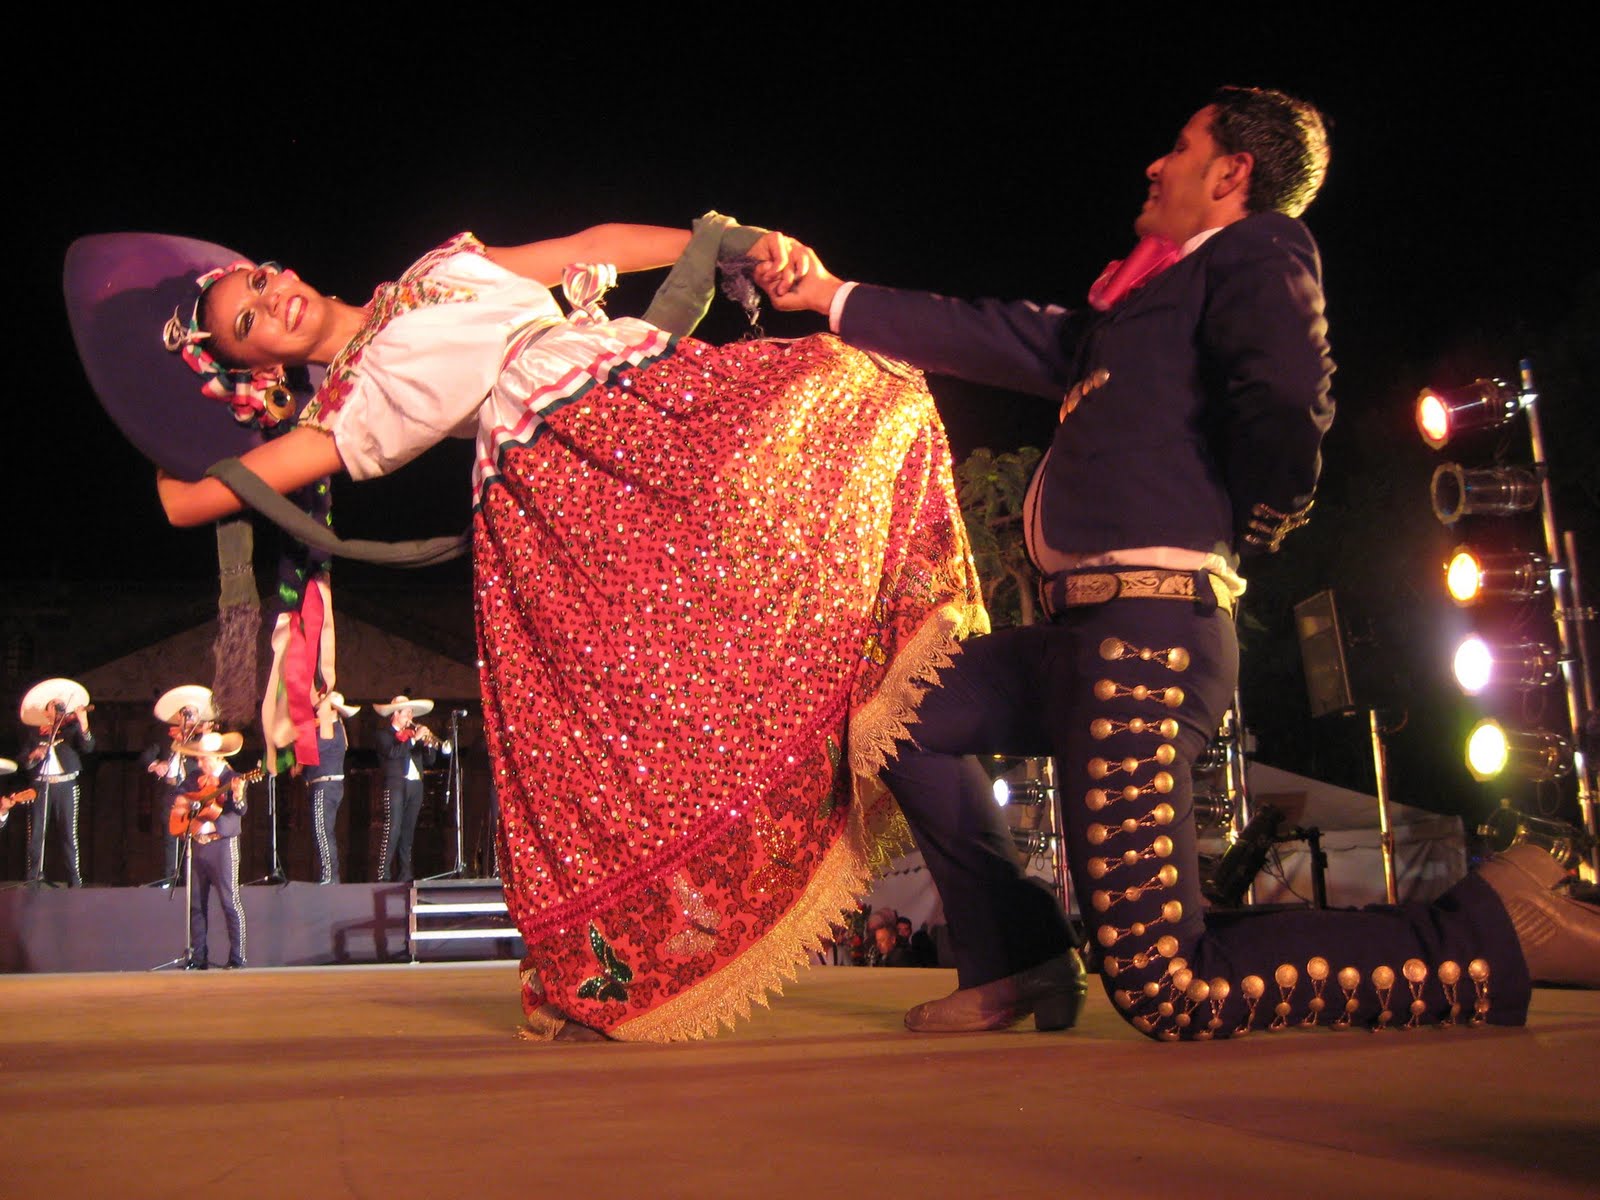 Танцы в мексике